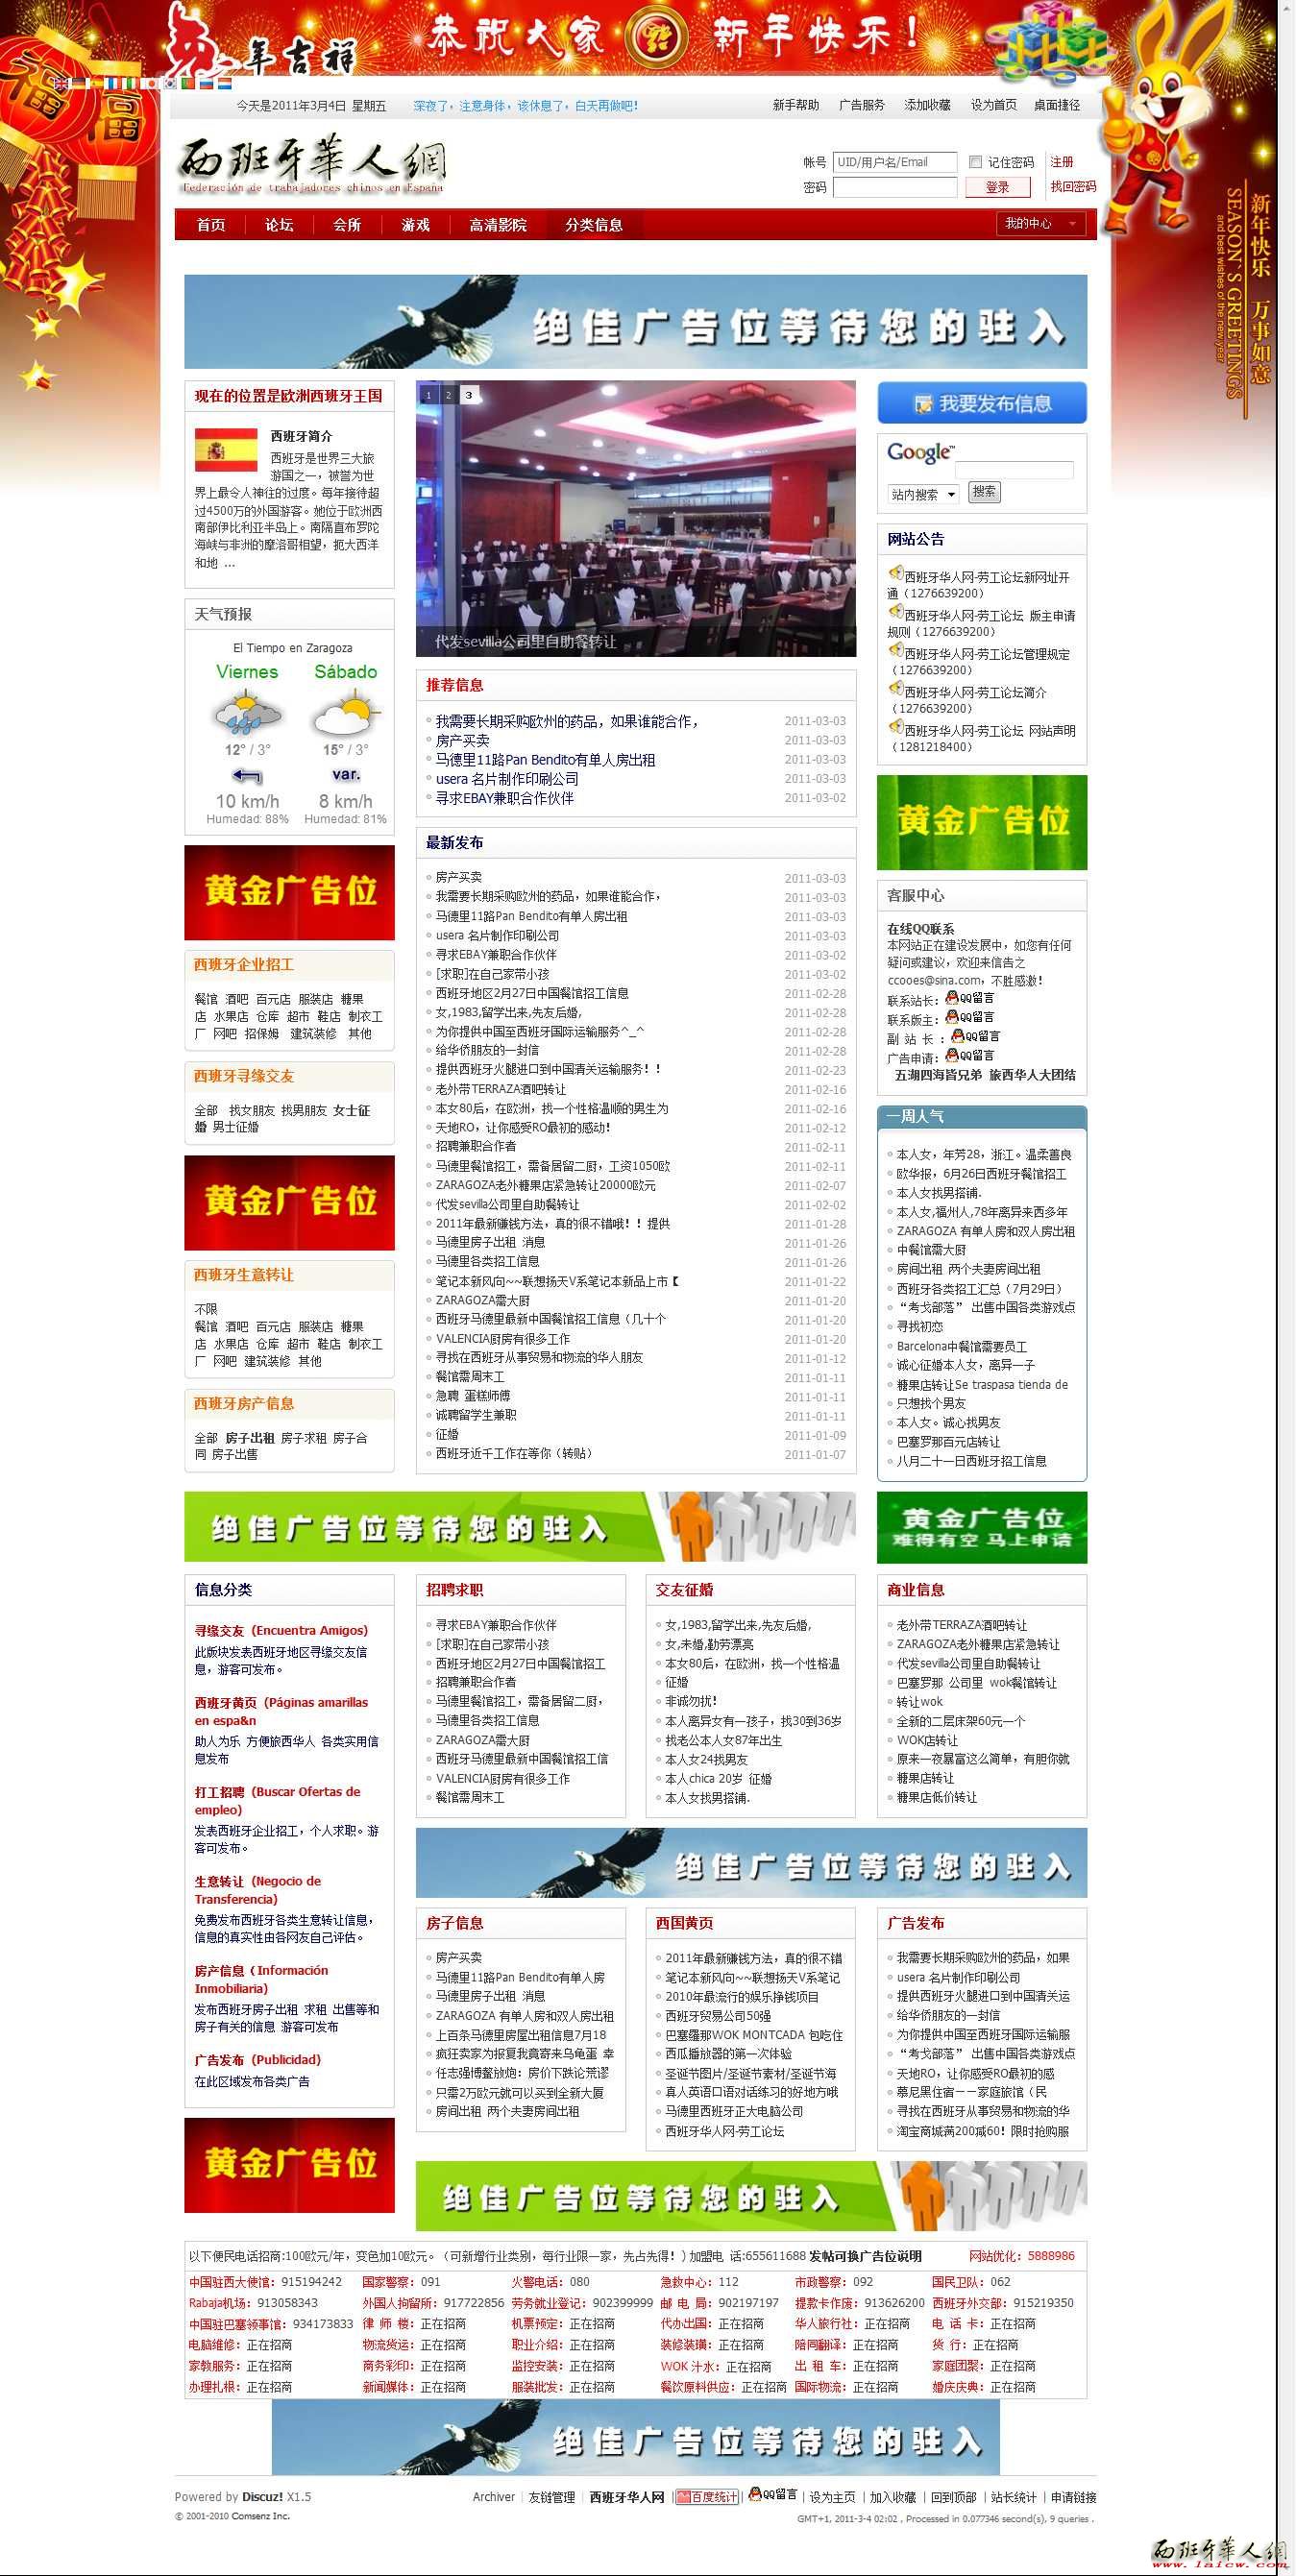 西班牙分类信息 - 西班牙华人网-劳工论坛.jpg